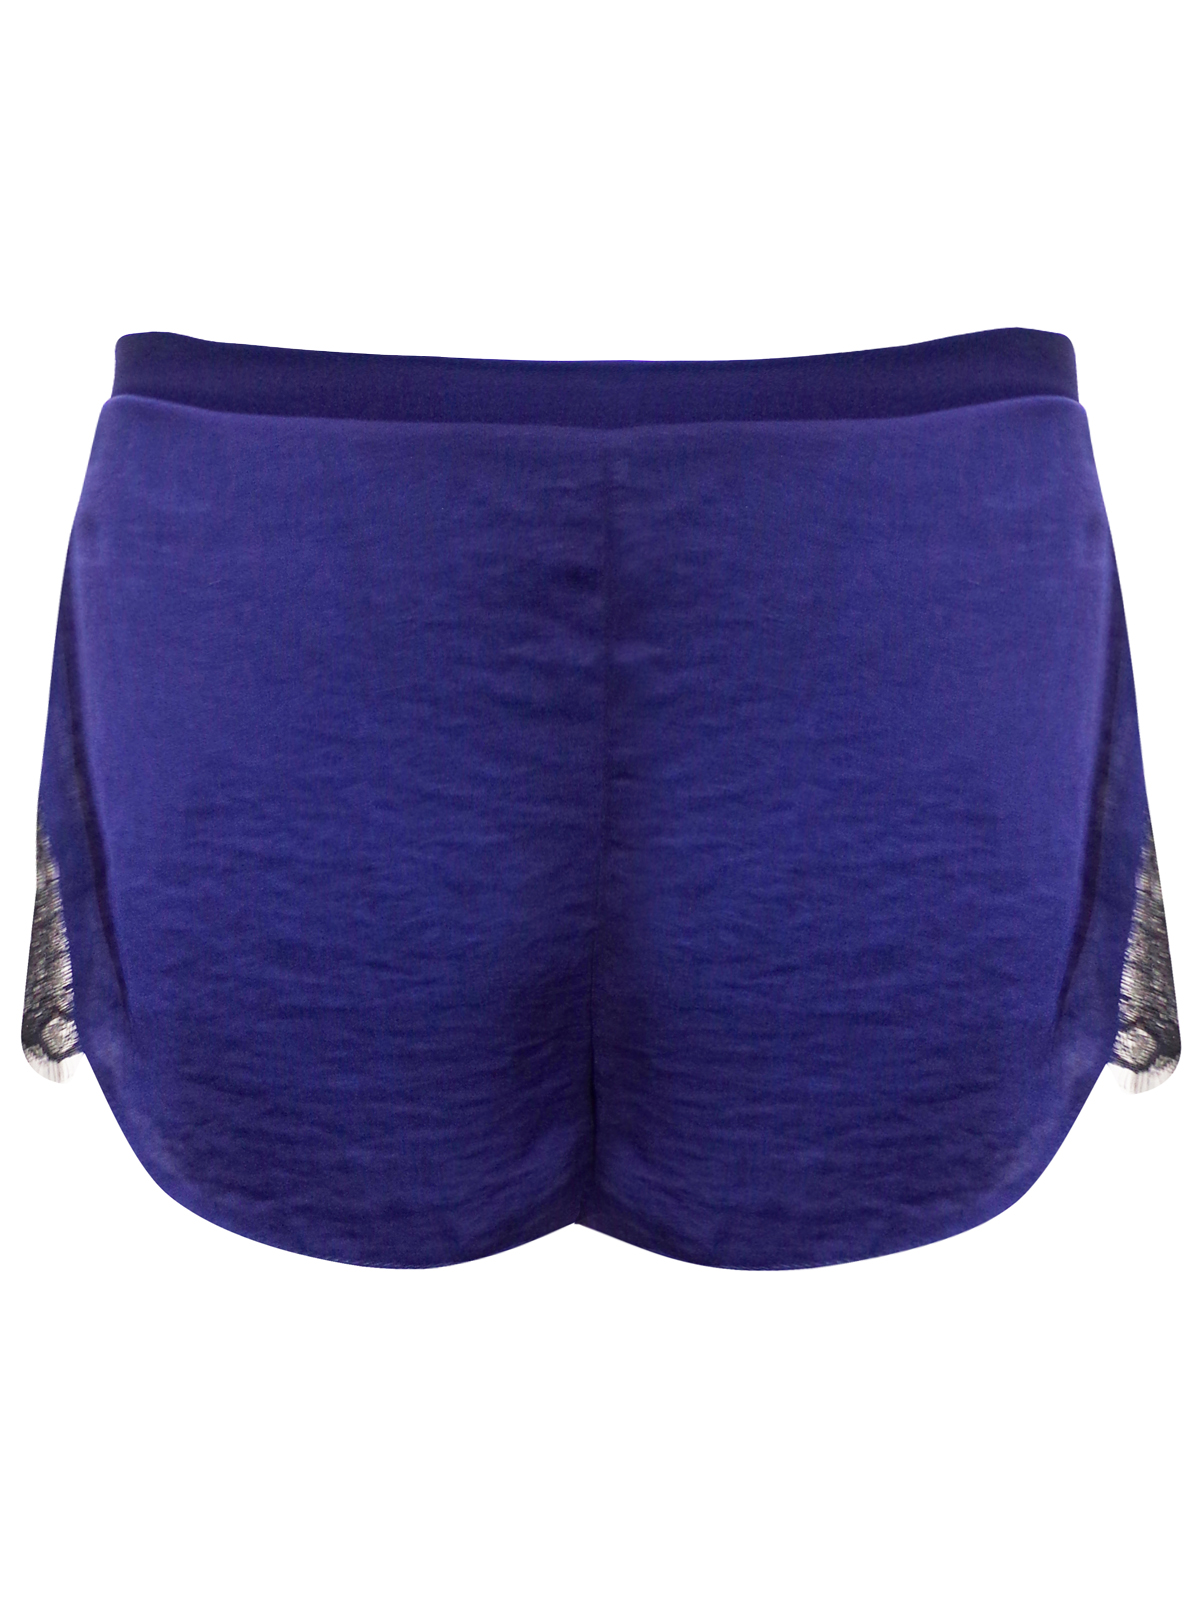 ASOS MIDNIGHT-BLUE Lace Panelled Satin Pyjama Shorts - Size Medium to Large